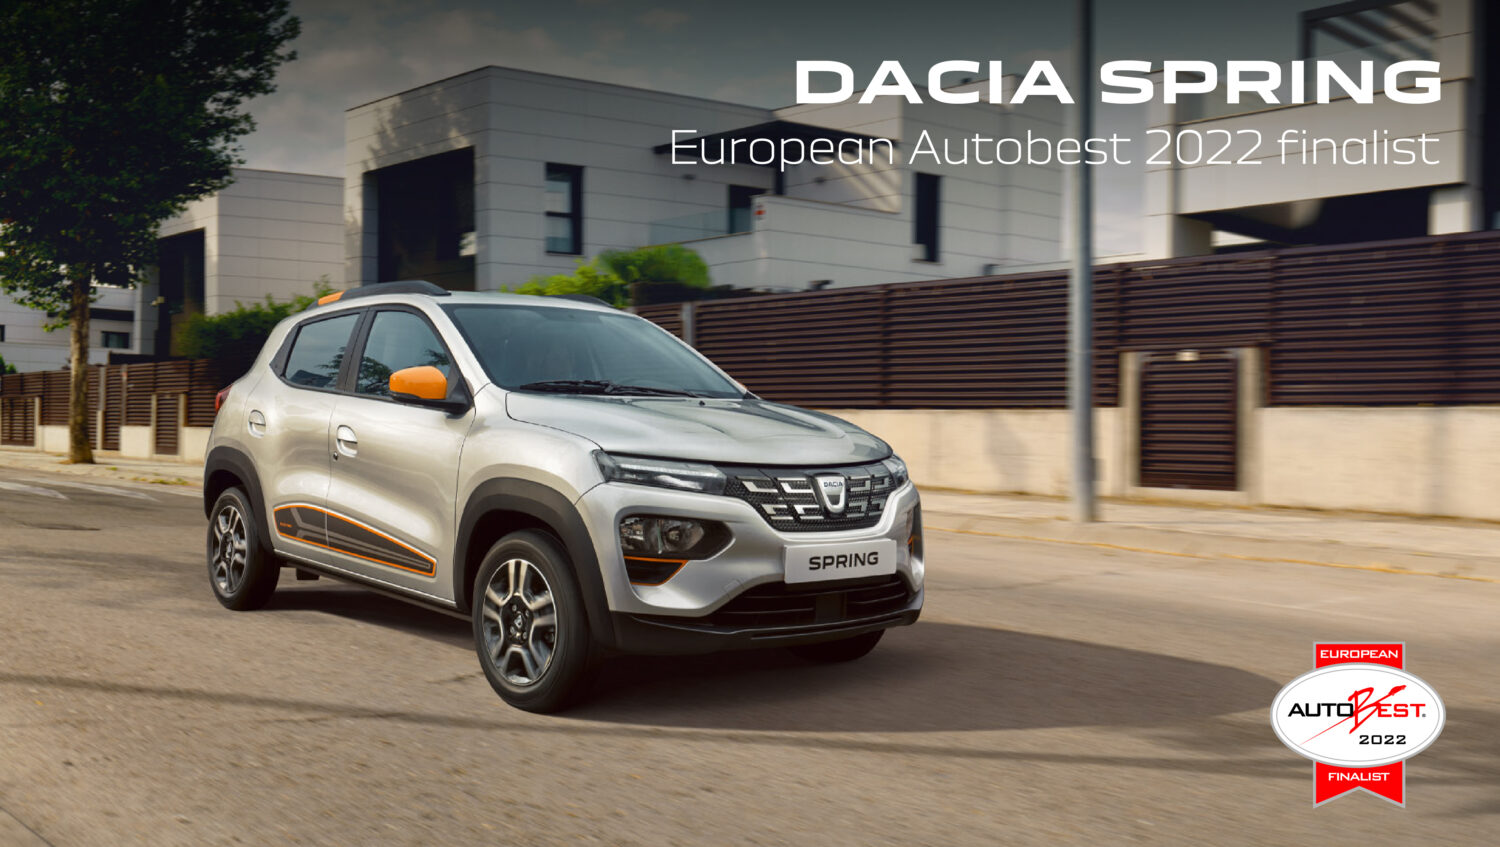 2021 - Dacia Spring Autobest 2022